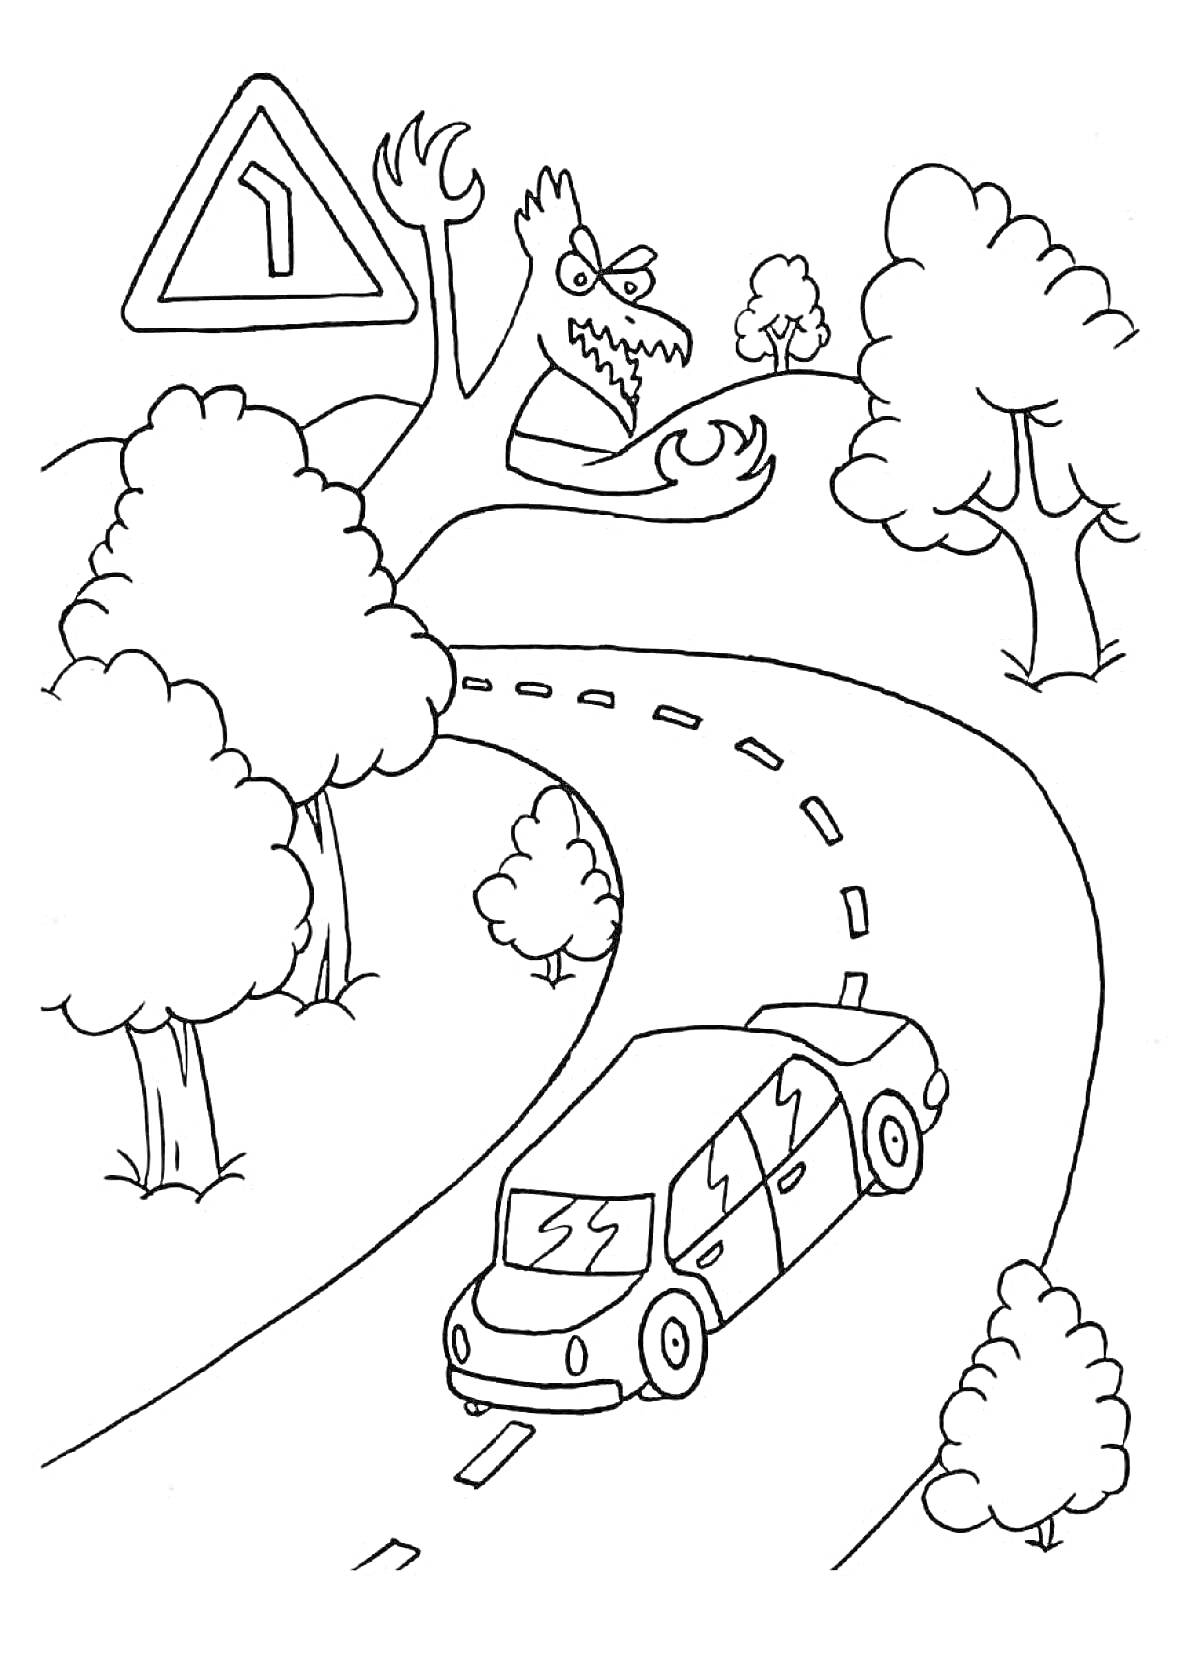 Извилистая дорога с машиной и дорожным знаком со сказочным монстром среди деревьев